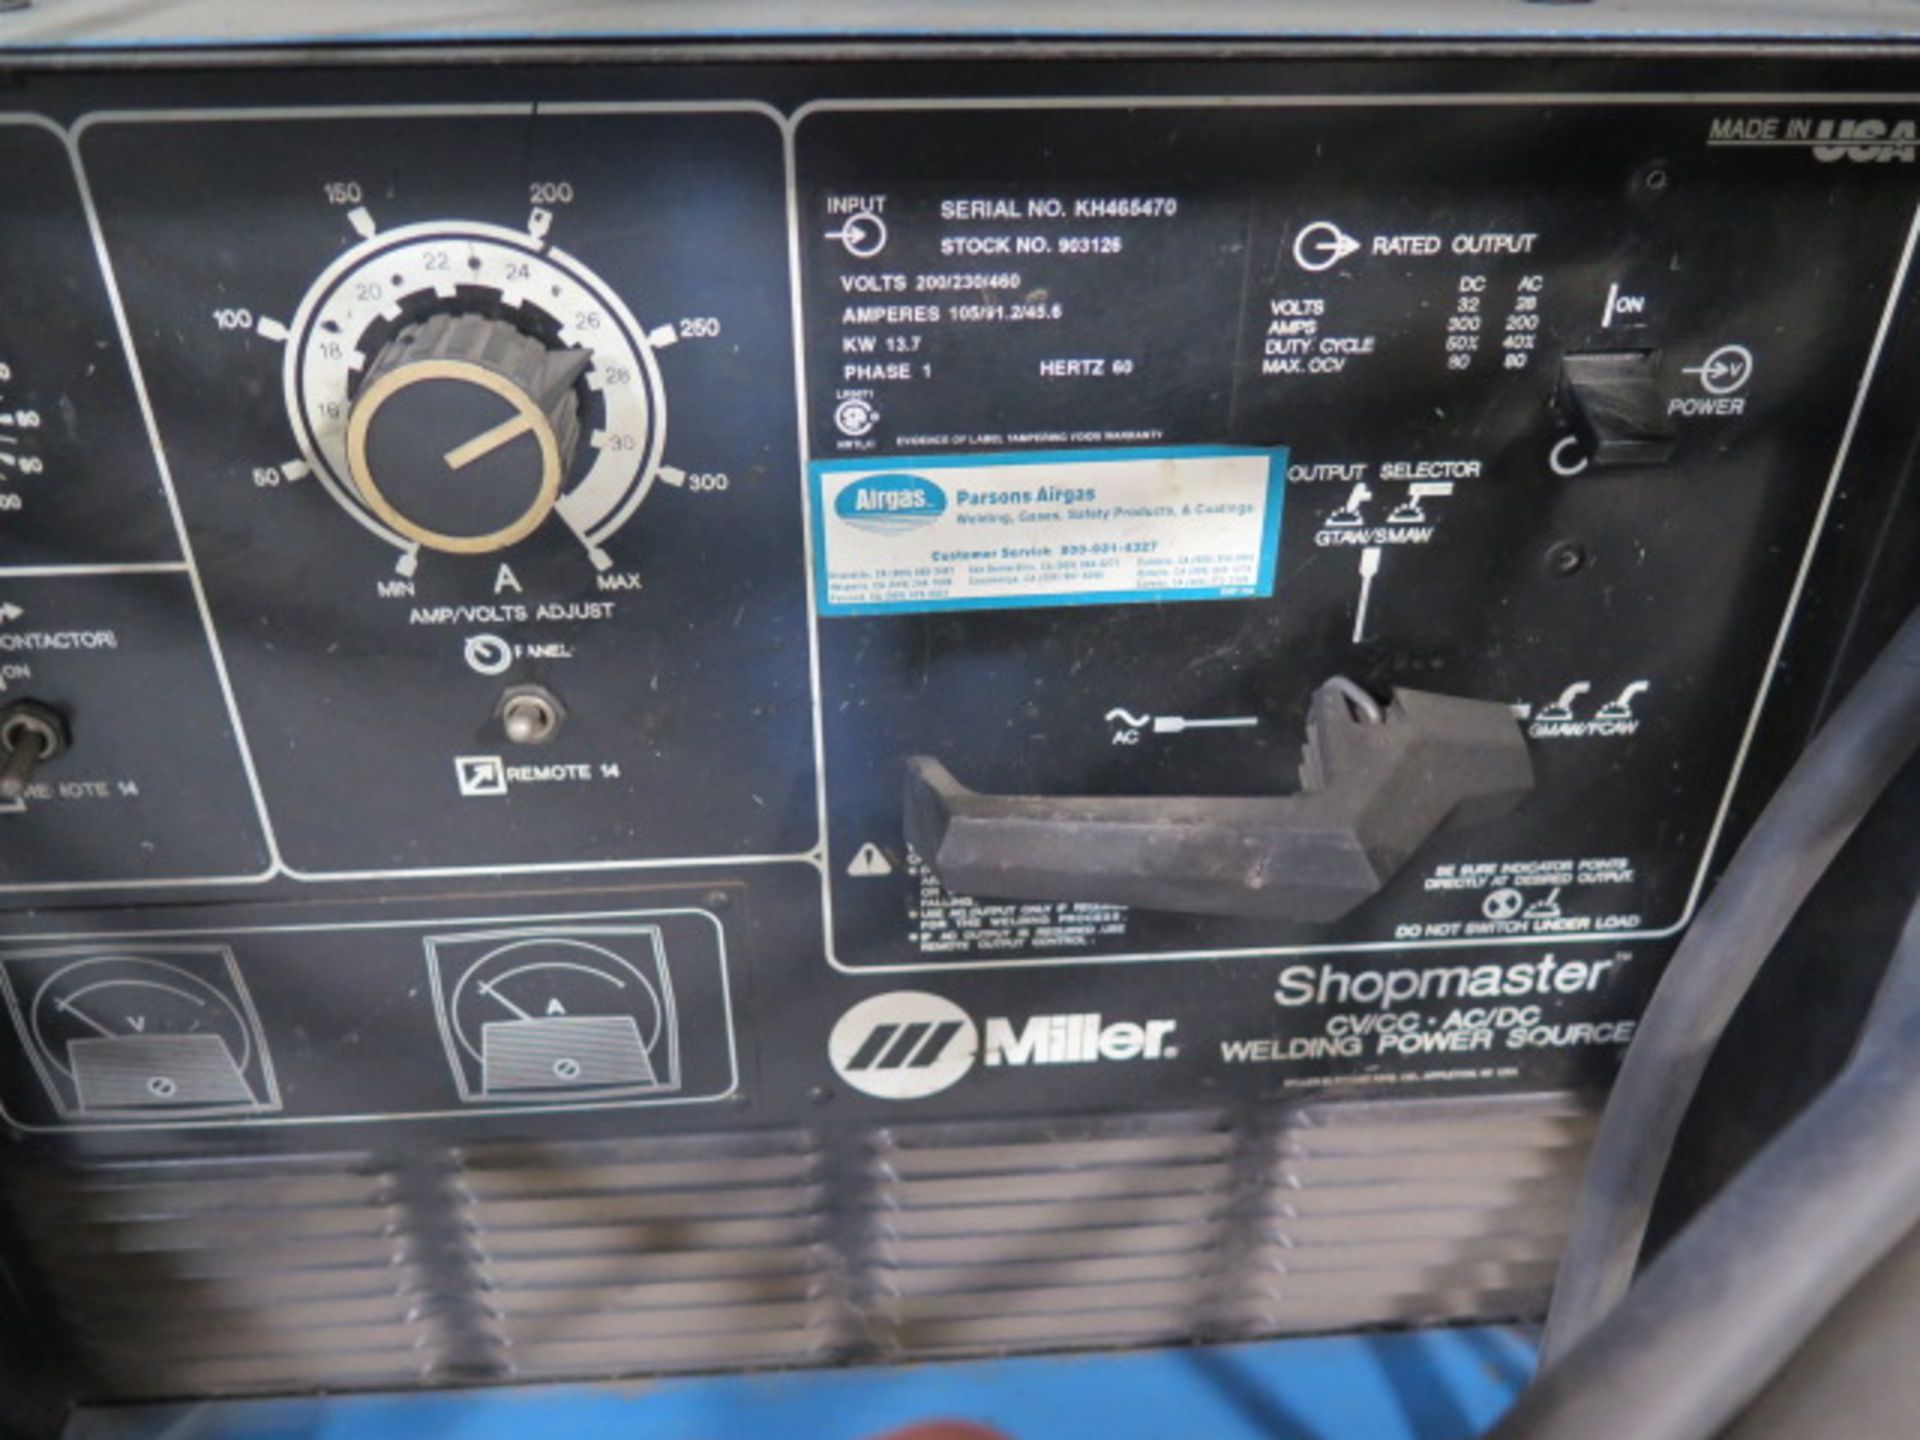 Miller Shopmaster 300 AC/DC Welding Power Source s/n KH465470 w/ Miller 60 Series Wire Feeder - Bild 2 aus 4